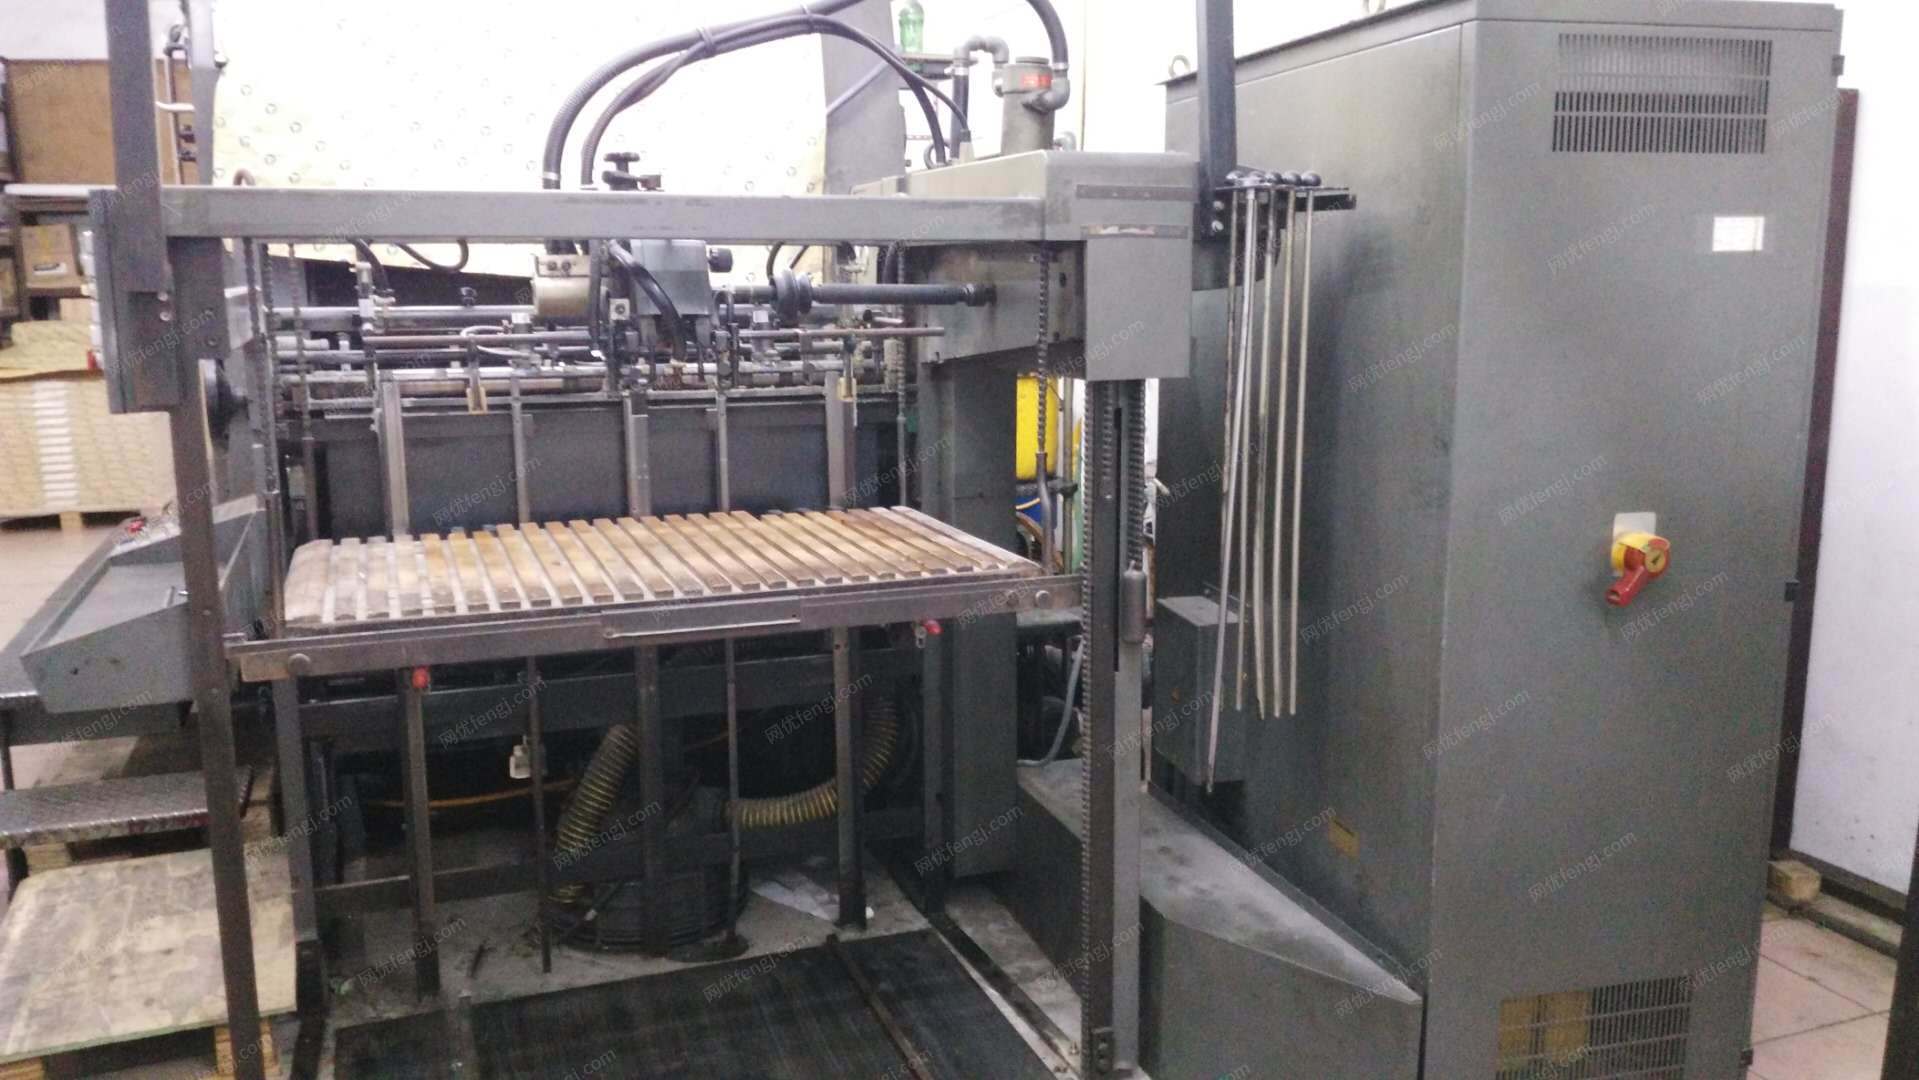 印刷厂转让在用富士胶印机,切纸机.覆膜机.海德堡102,1+1/2+0双色印刷机一批,有图片